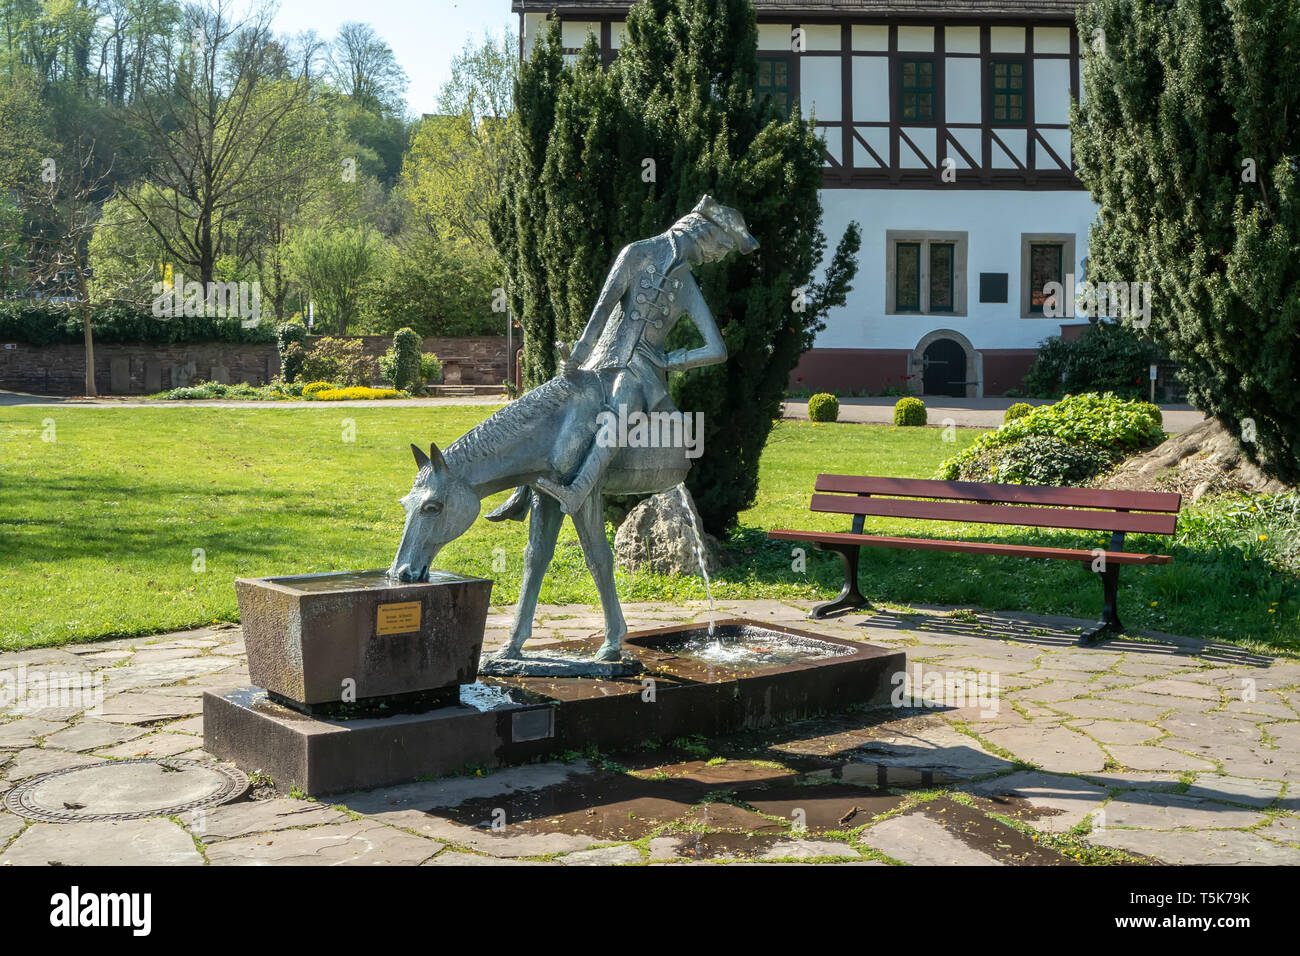 Bodenwerder, Germany, 21/04/2019: Sculpture of the 'Lügenbaron von Münchhausen' Stock Photo